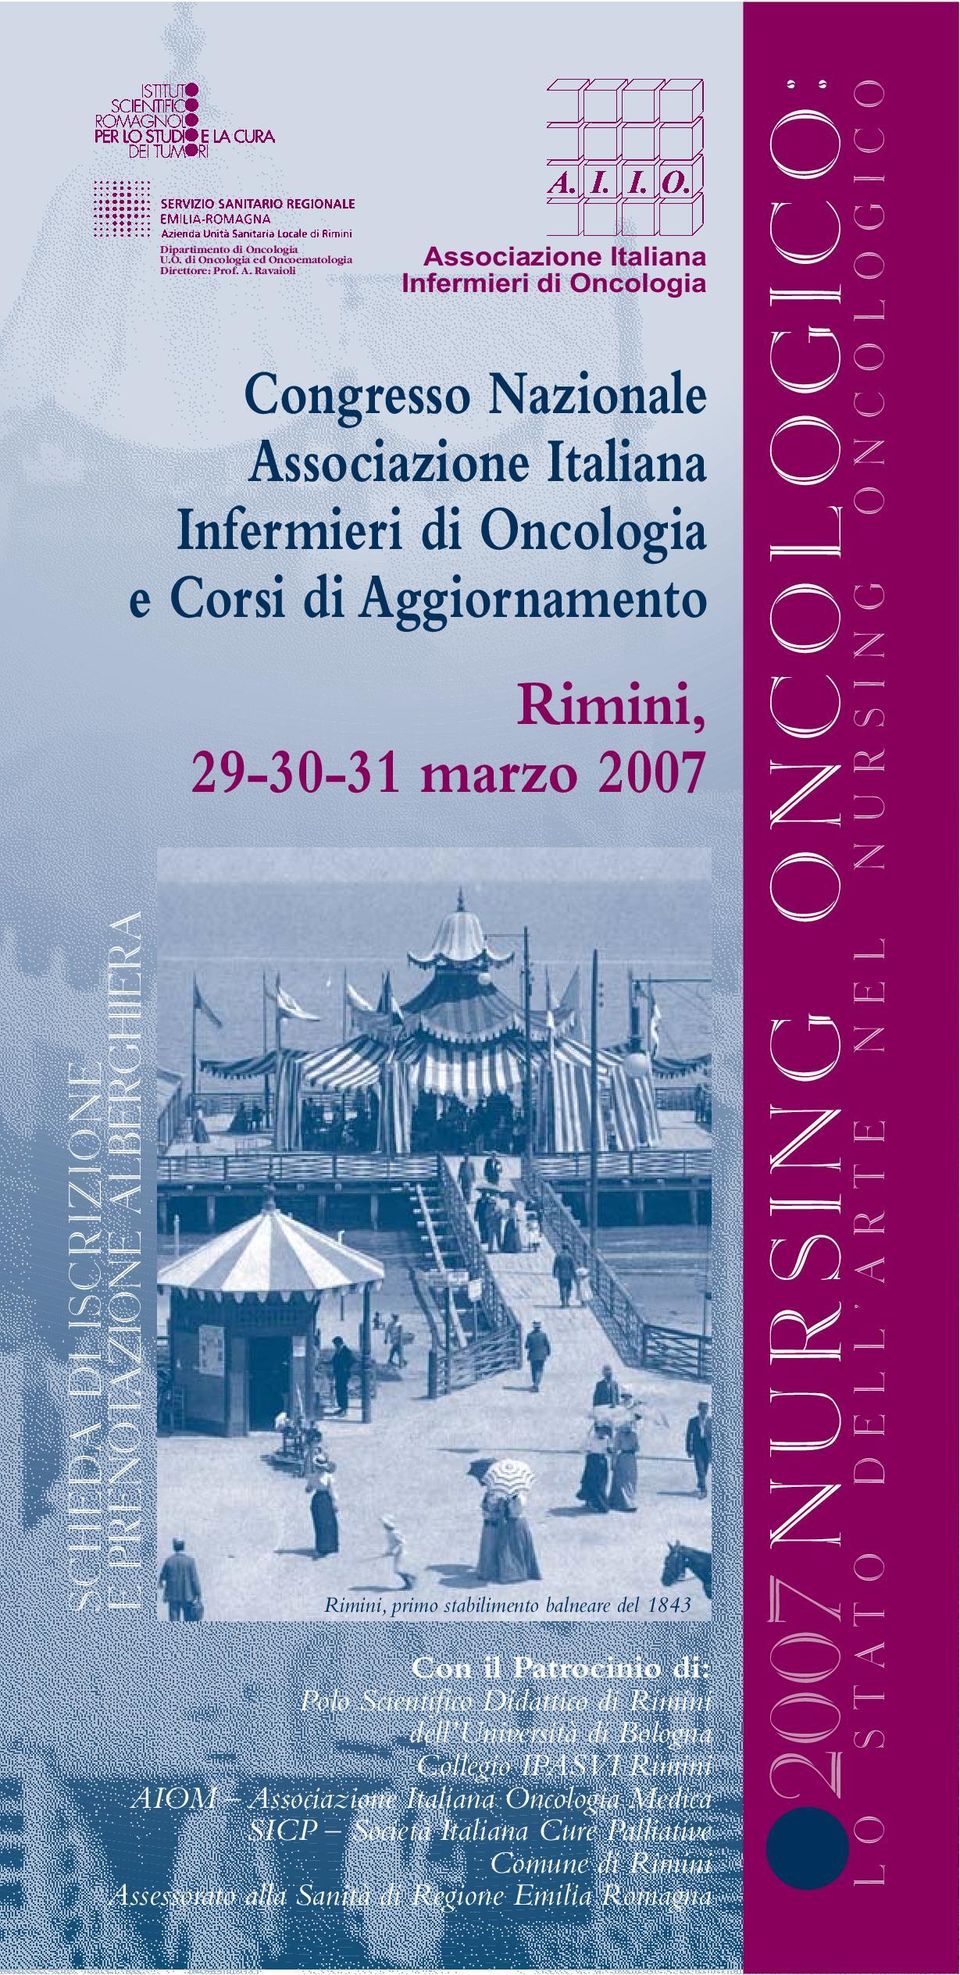 Ravaioli Associazione Italiana Infermieri di Oncologia Congresso Nazionale Associazione Italiana Infermieri di Oncologia e Corsi di Aggiornamento Rimini, 29-30-31 marzo